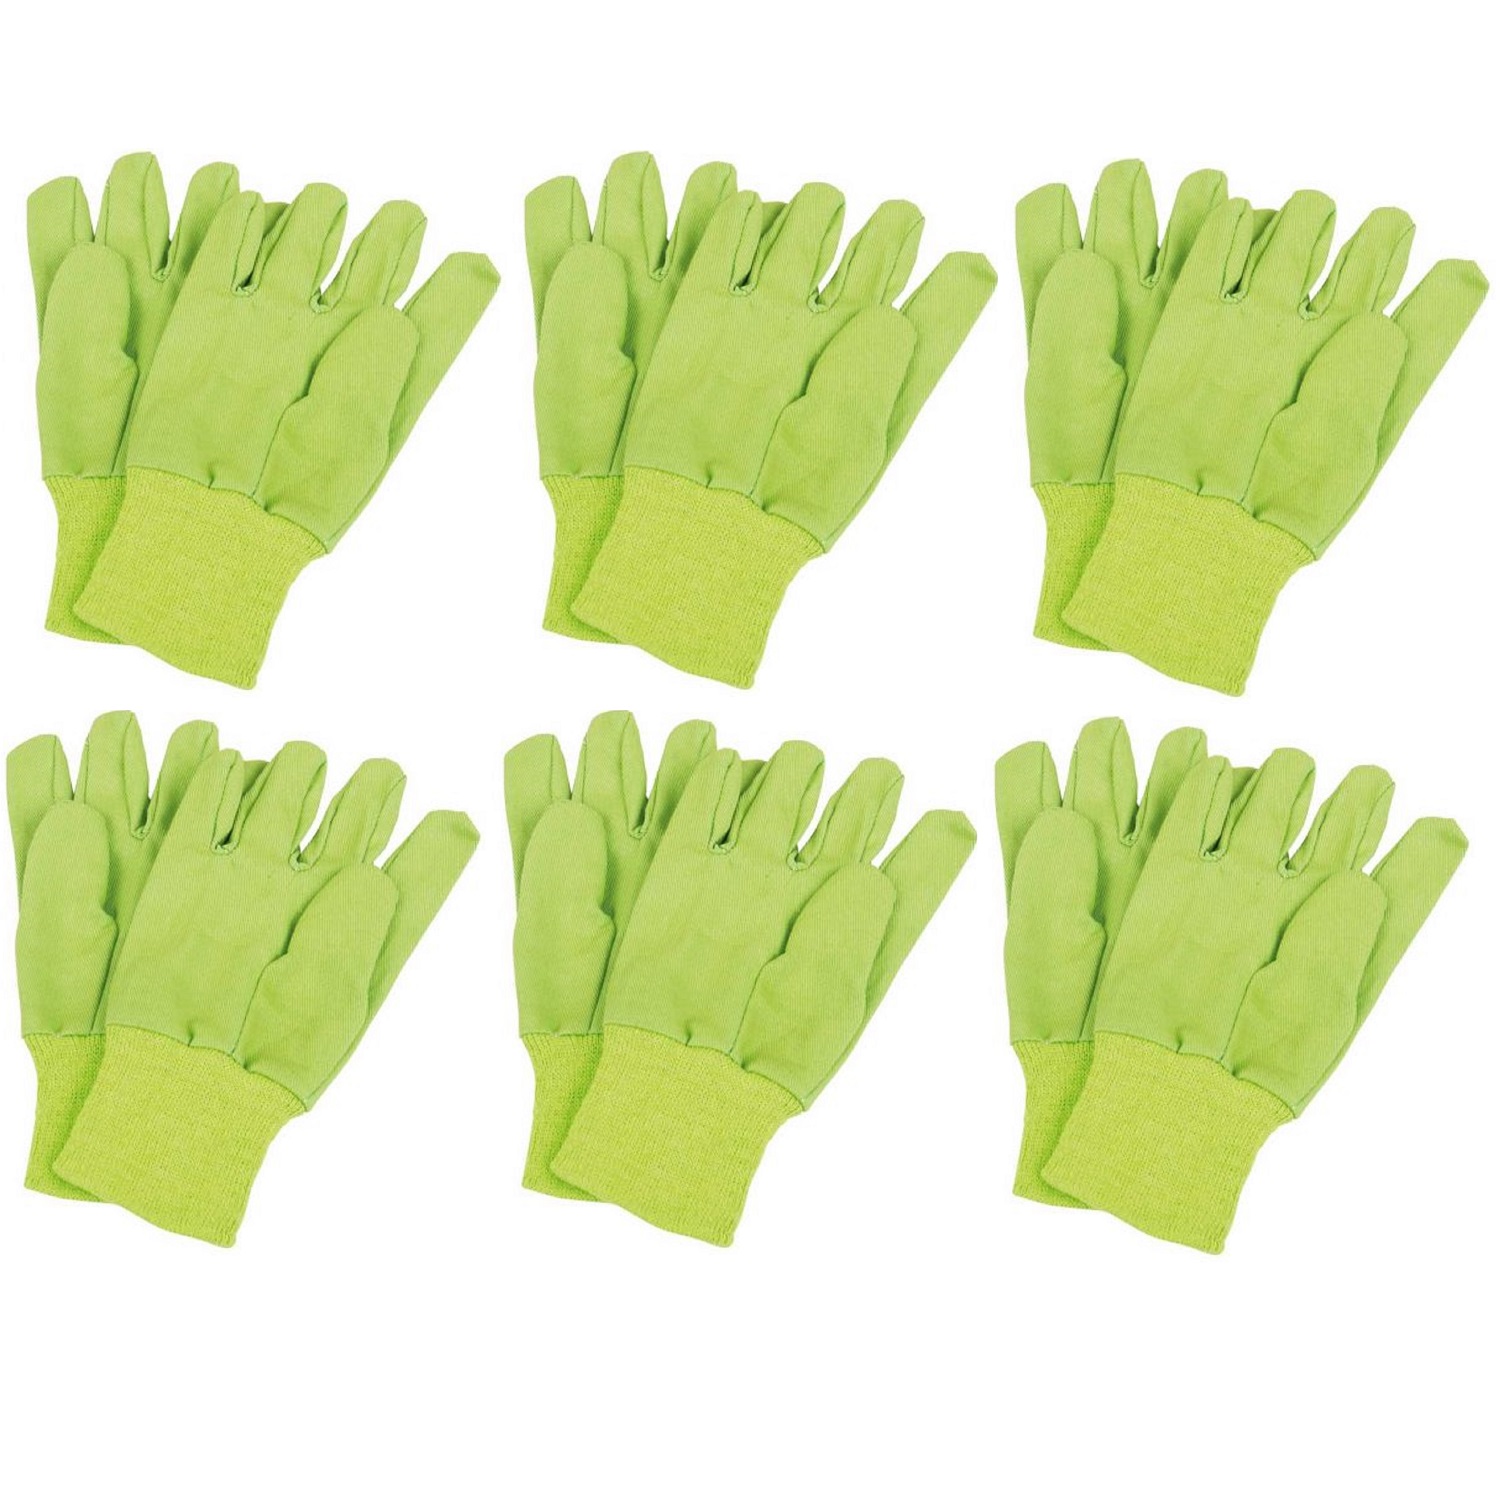 Gardening Gloves For Schools And Nurseries Childrens Garden Gloves